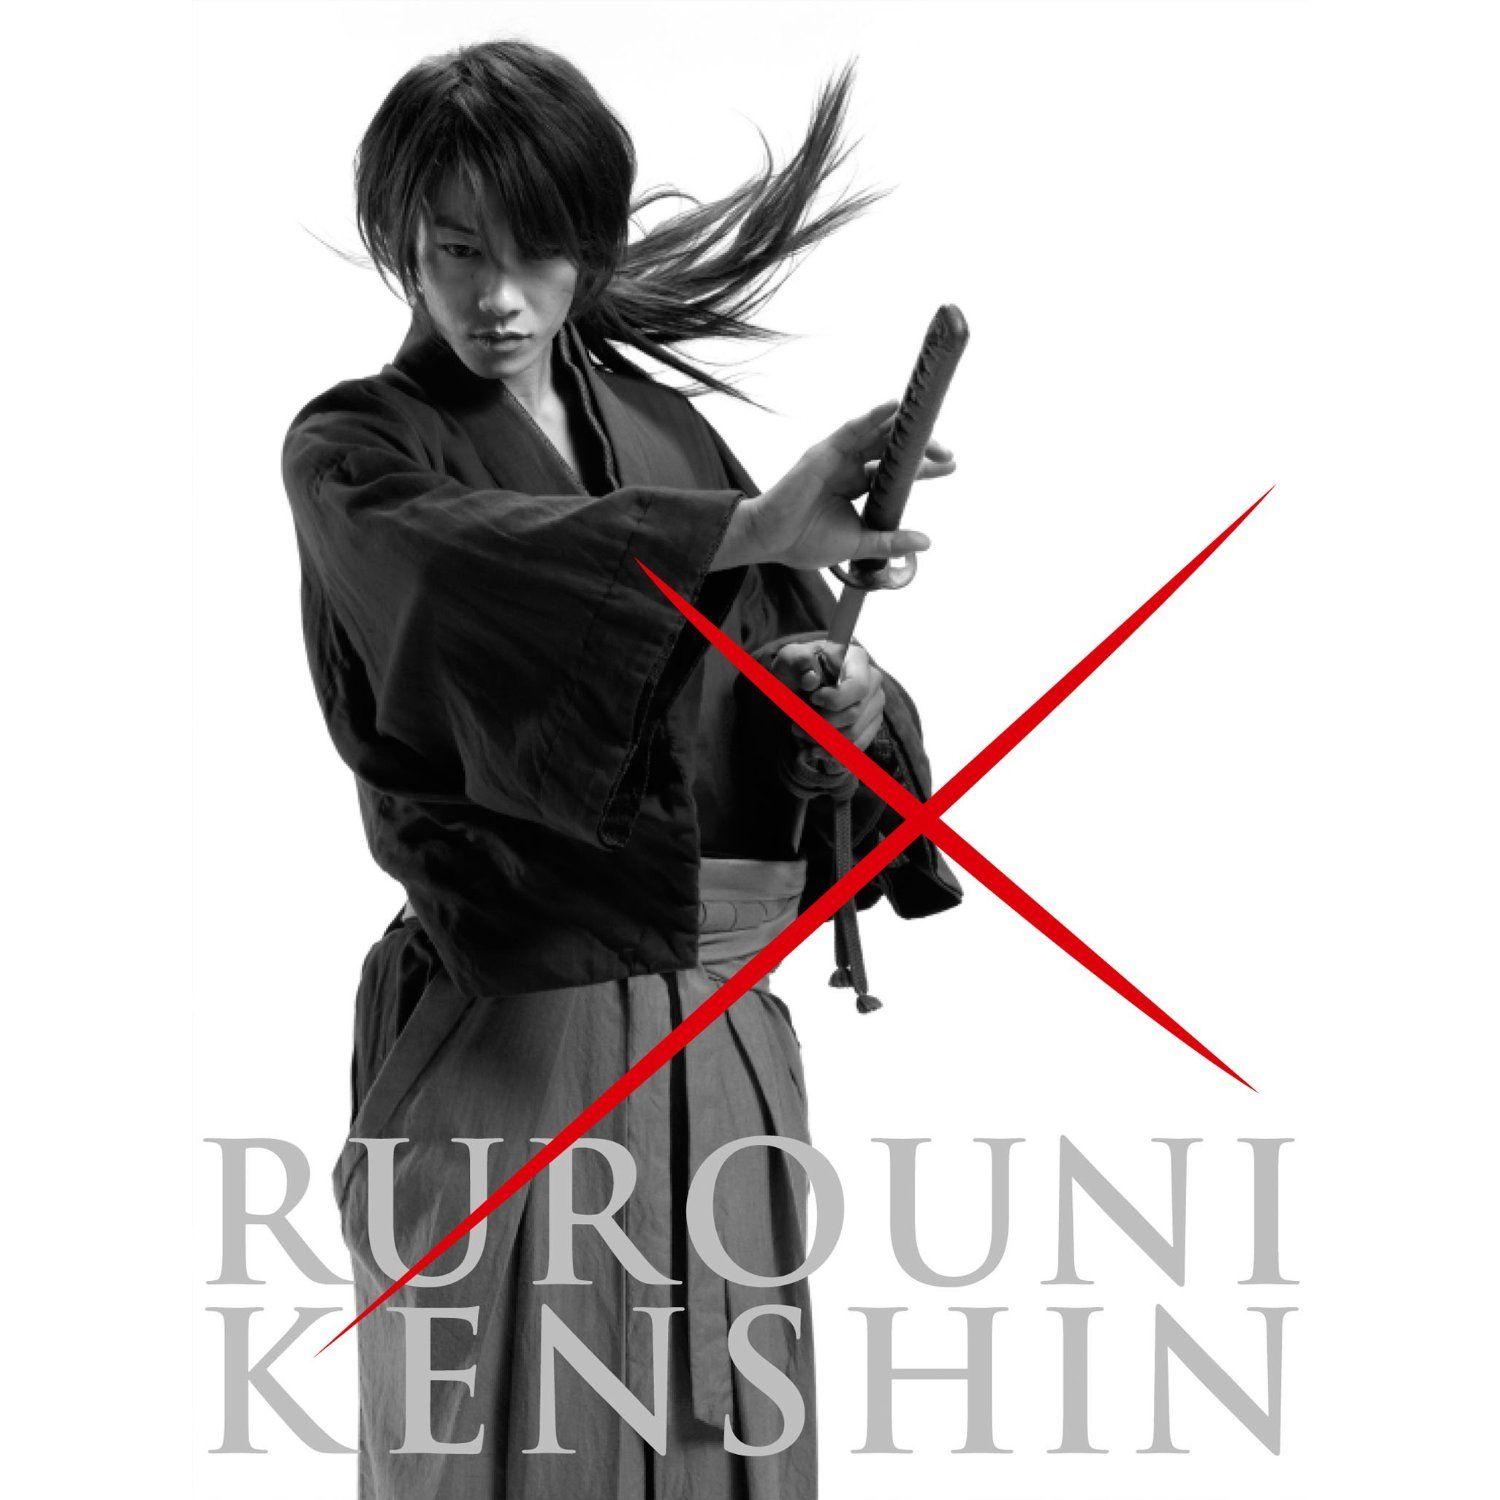 rurouni kenshin movie wallpaper